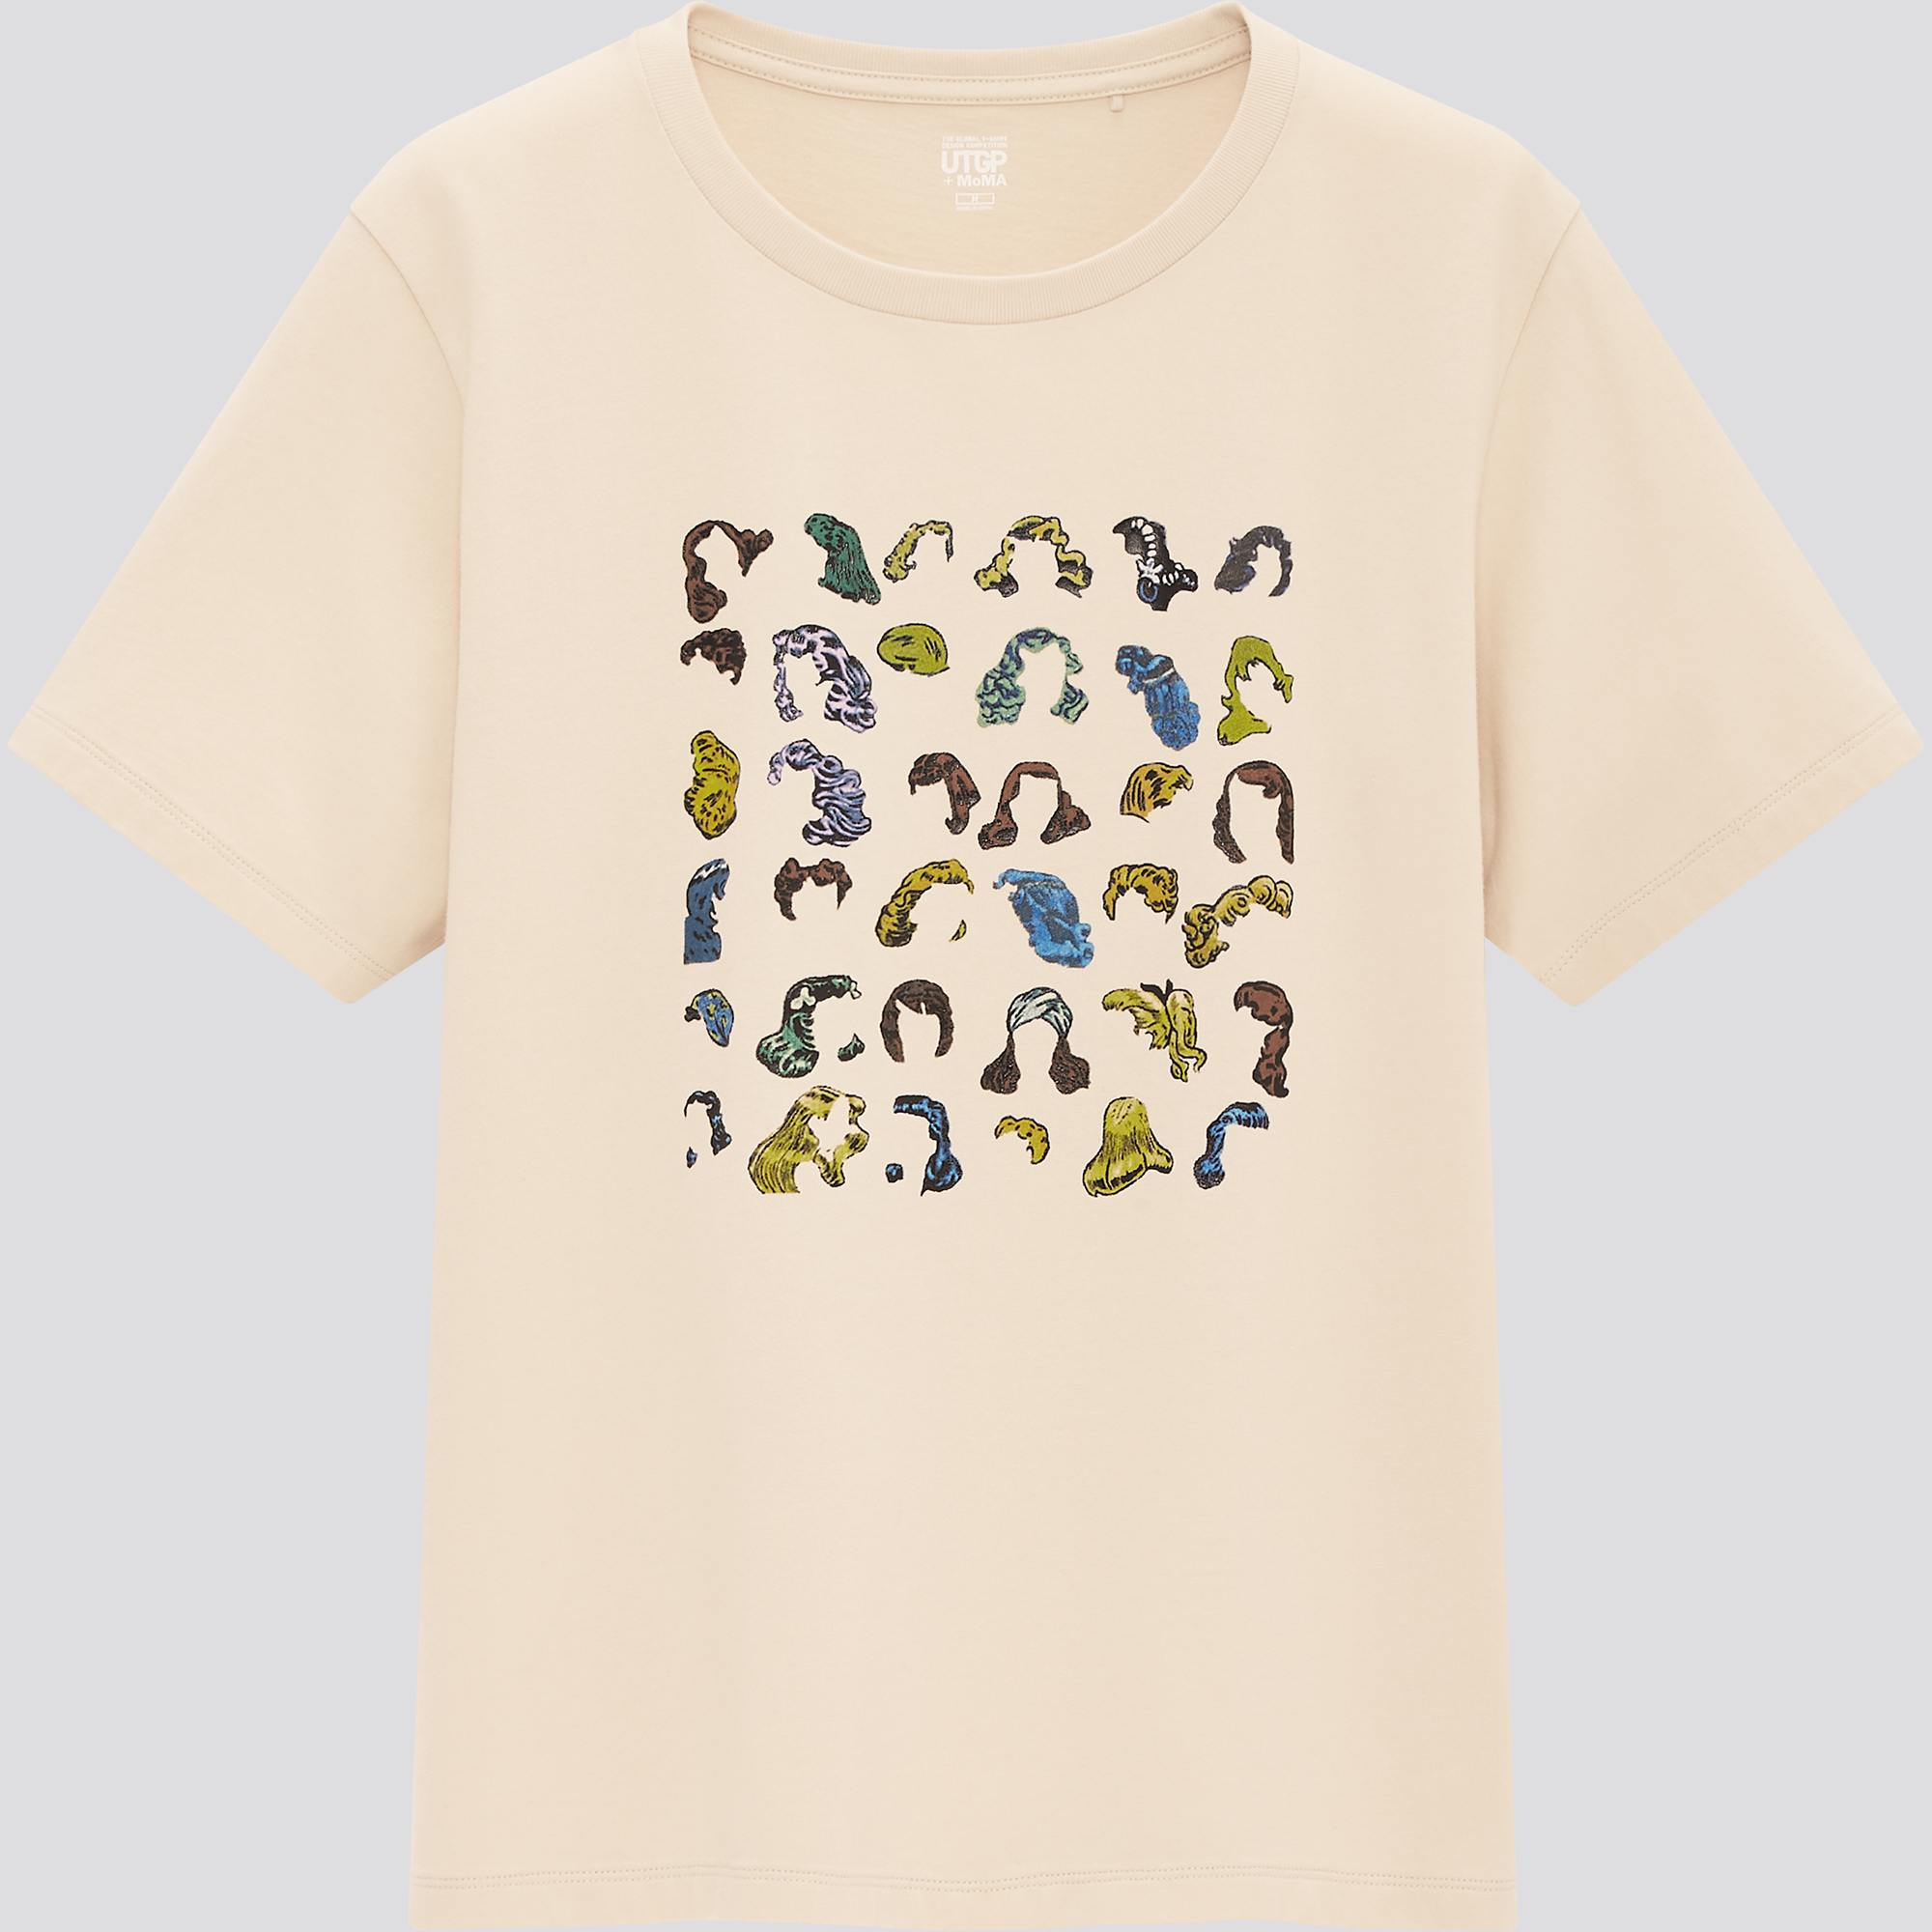 本日発売！ユニクロの「UTGP 2020 + MoMA」Tシャツは、今年もレア感が